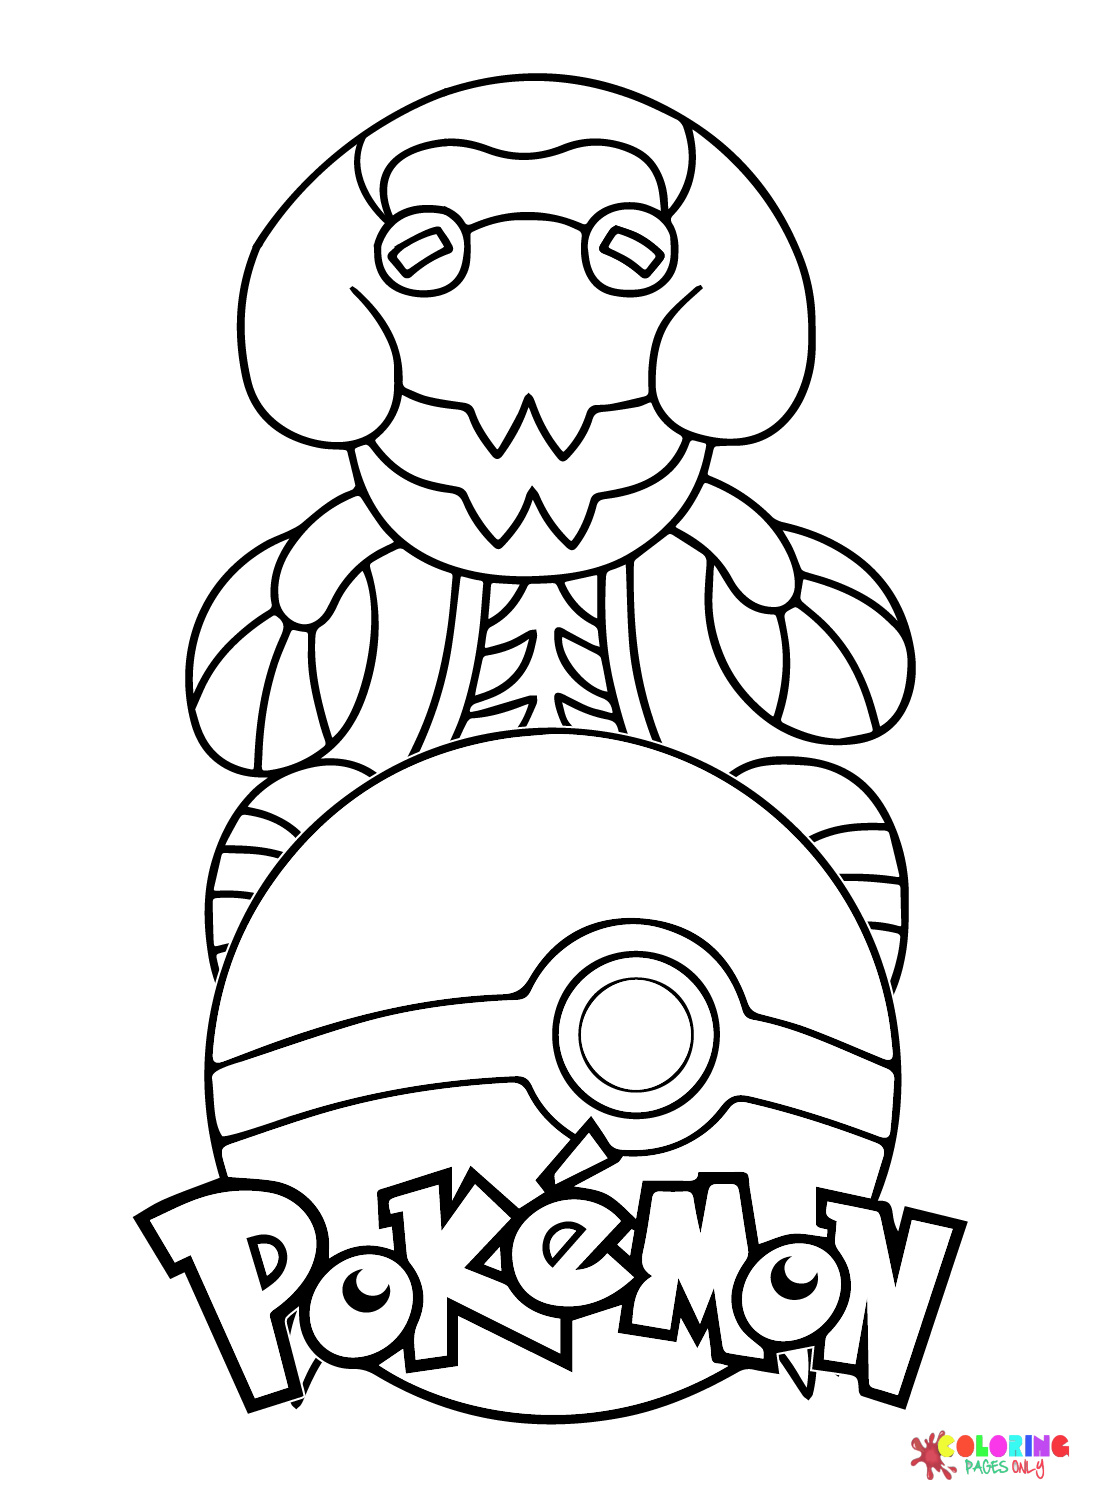 Il Pokémon Dracovish di Dracovish